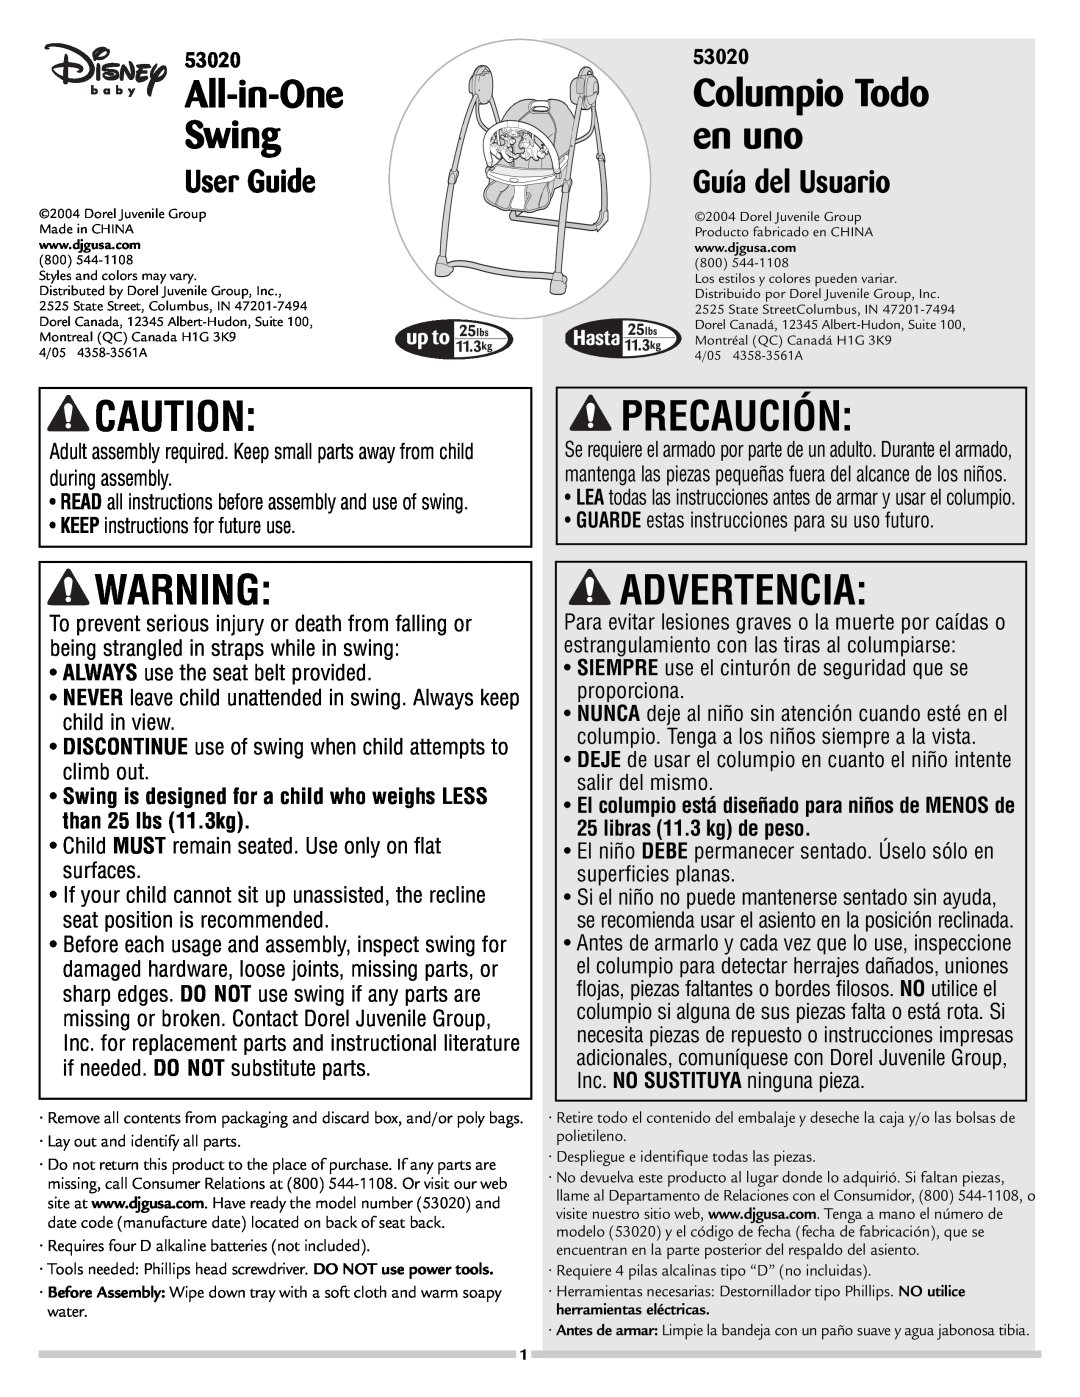 Disney 53020 manual Precaución, Advertencia, All-in-One, Swing, en uno, Columpio Todo, User Guide, Guía del Usuario 